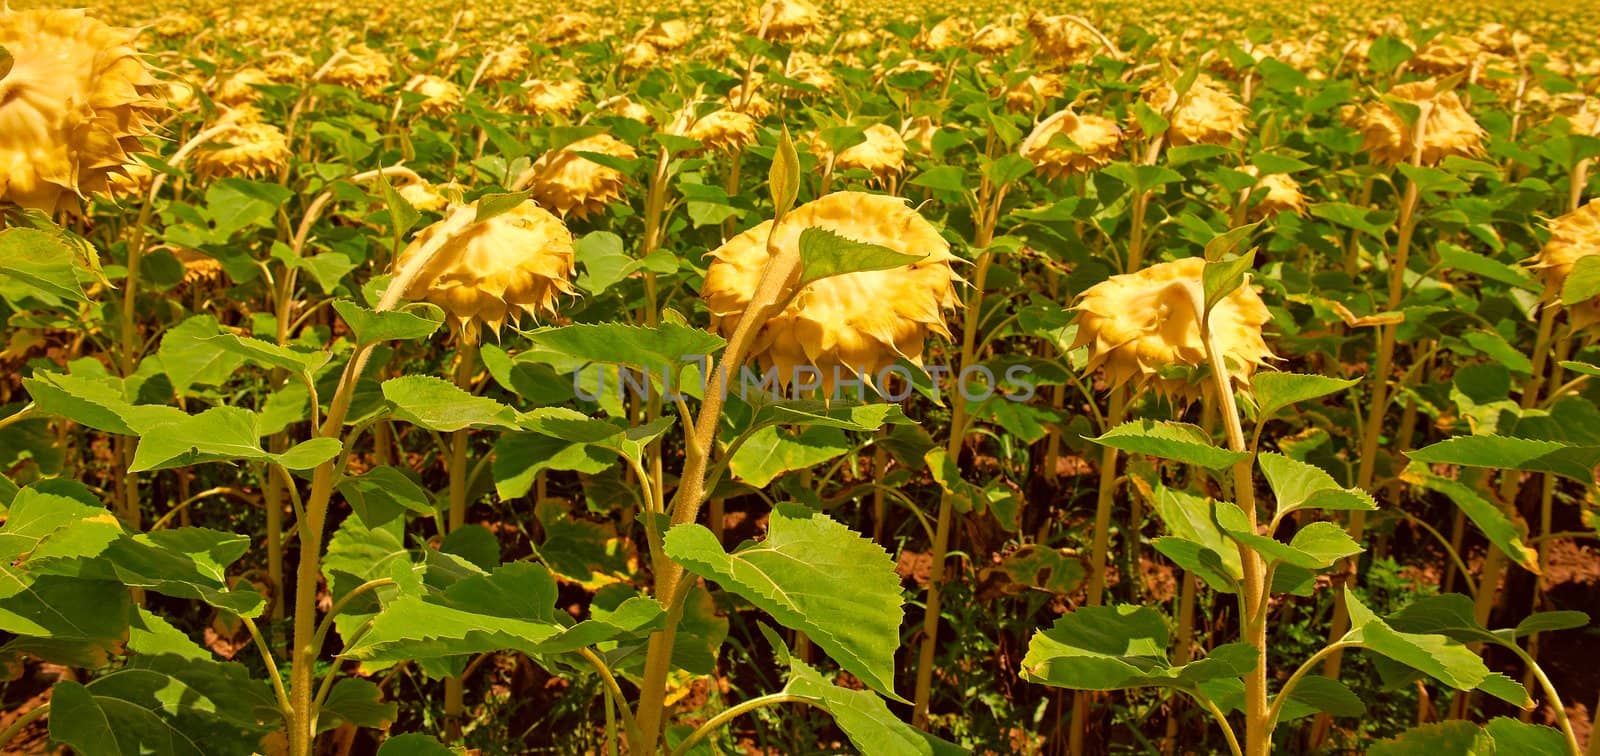 Unripe Sunflower Field in Southern France